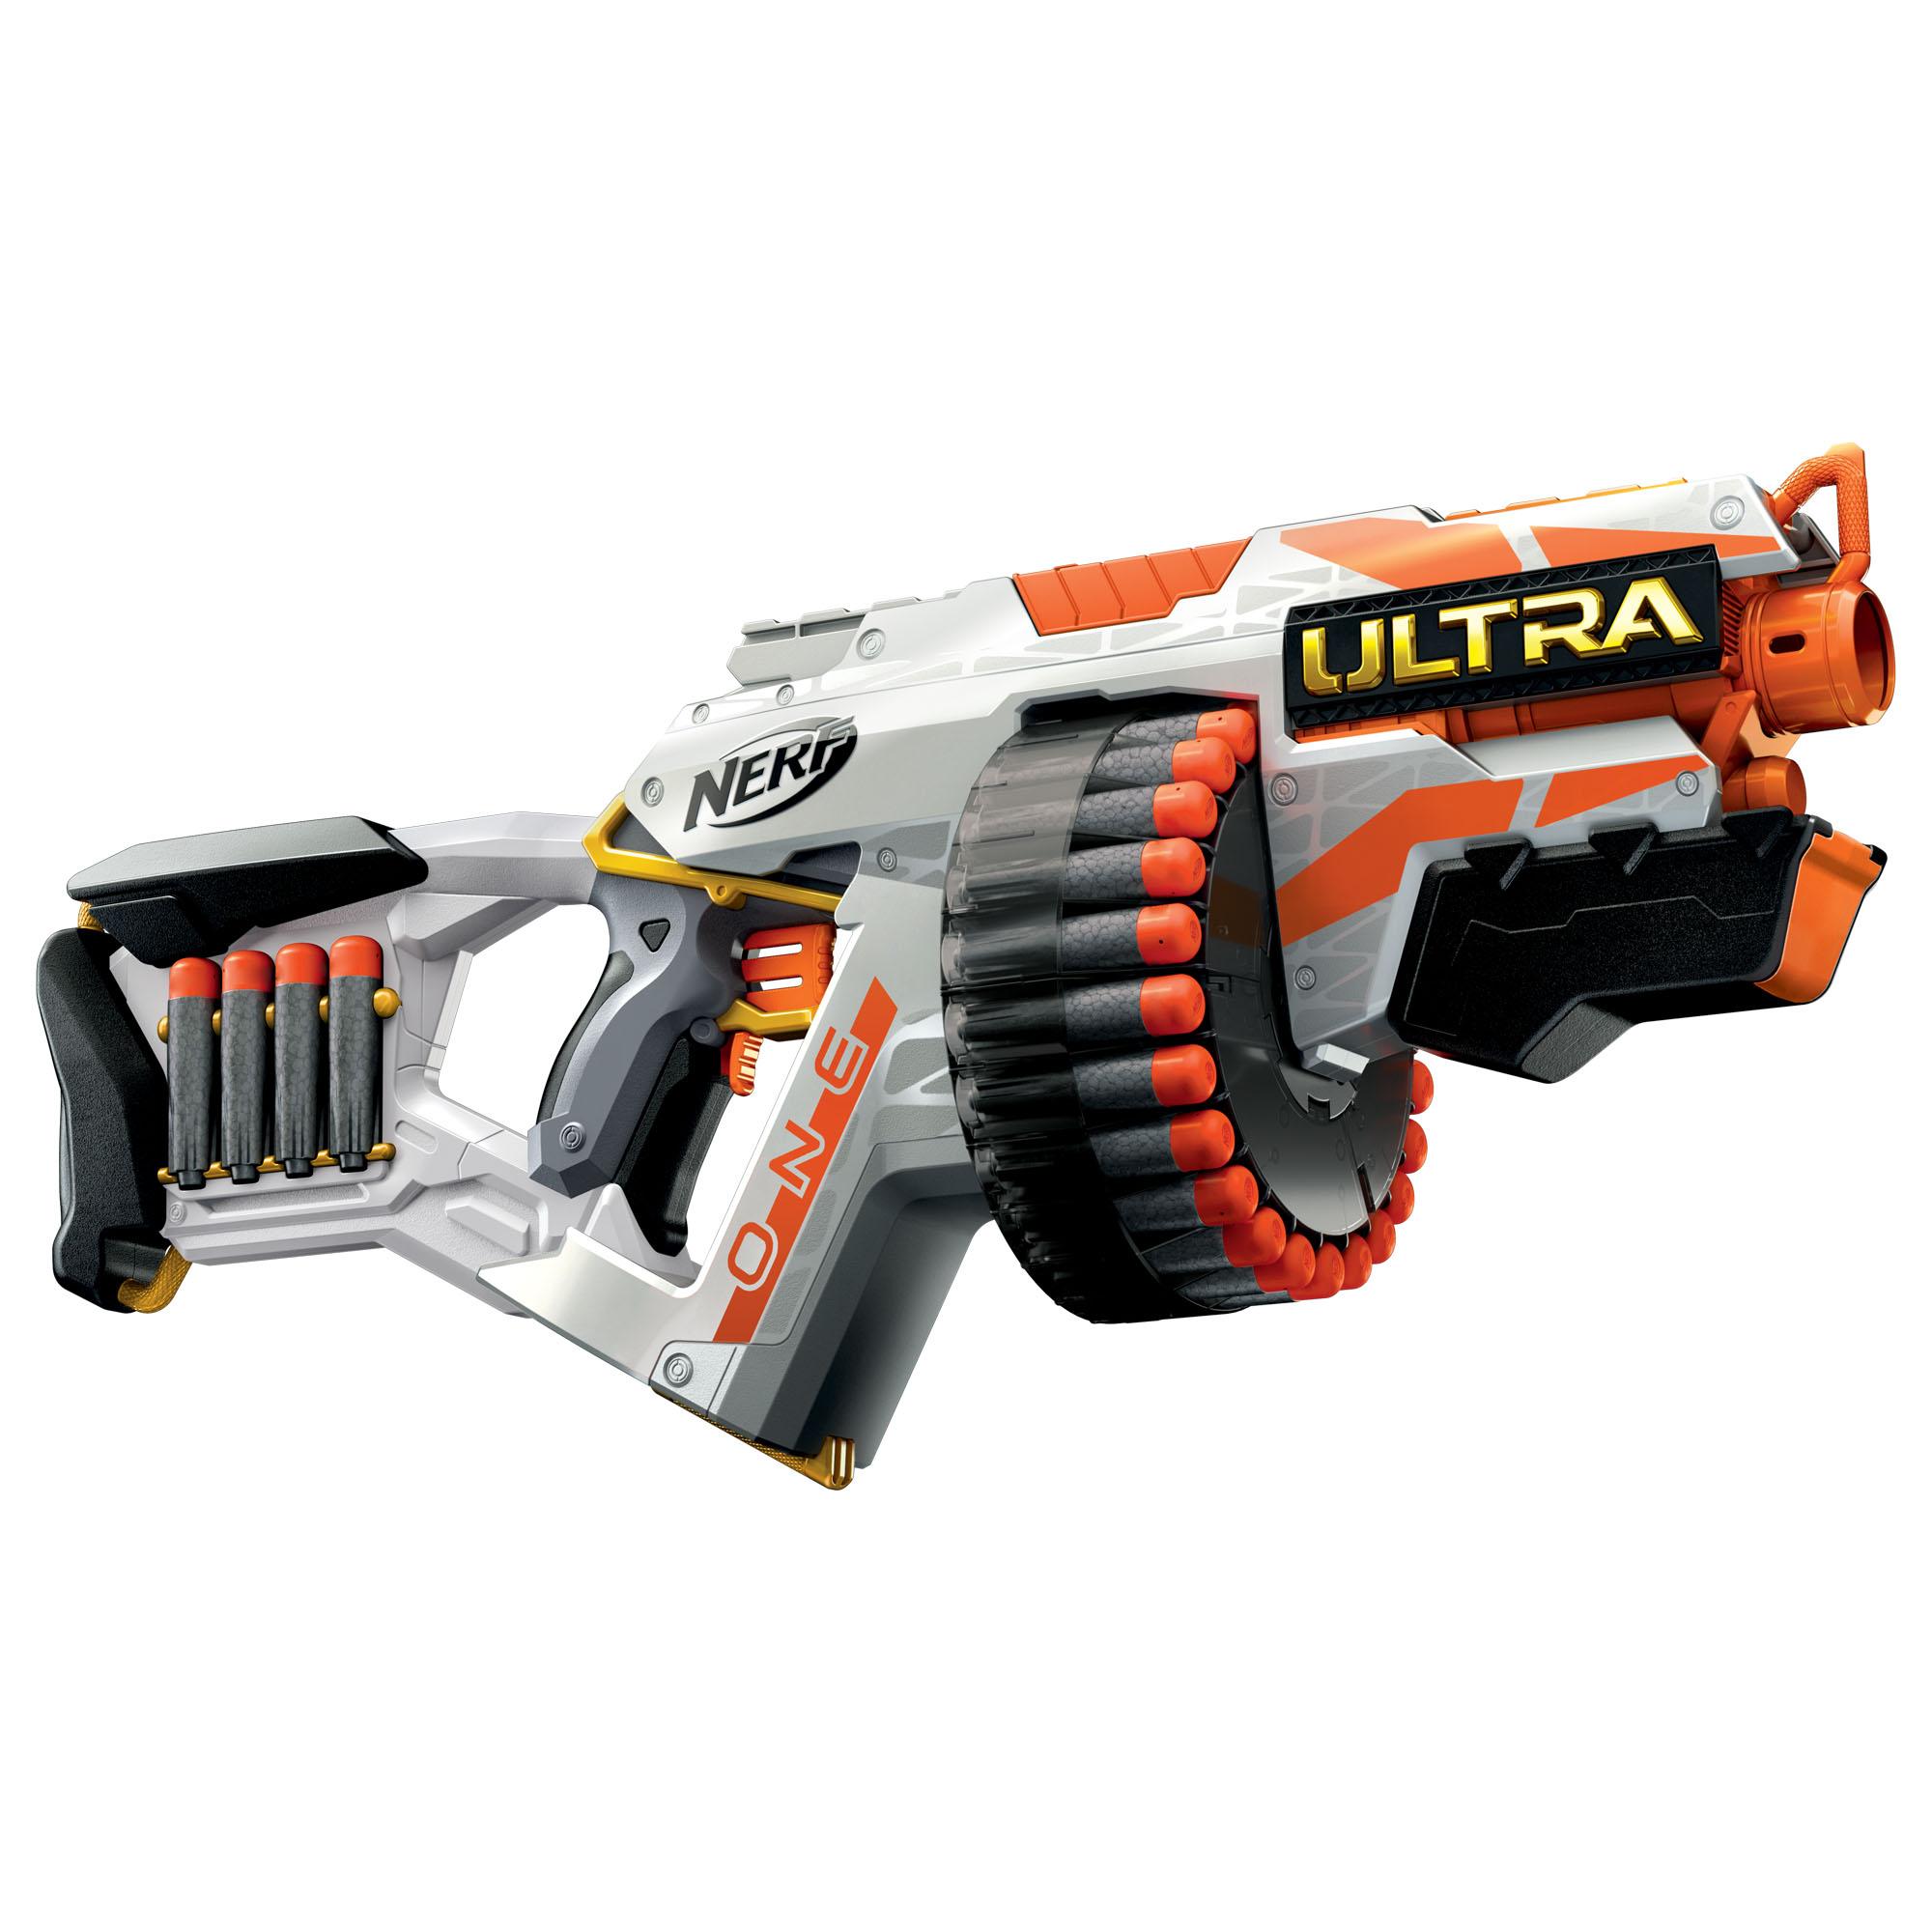 Nerf Ultra One Blaster motorisé - 25 fléchettes Nerf Ultra, compatible uniquement avec les fléchettes Nerf Ultra